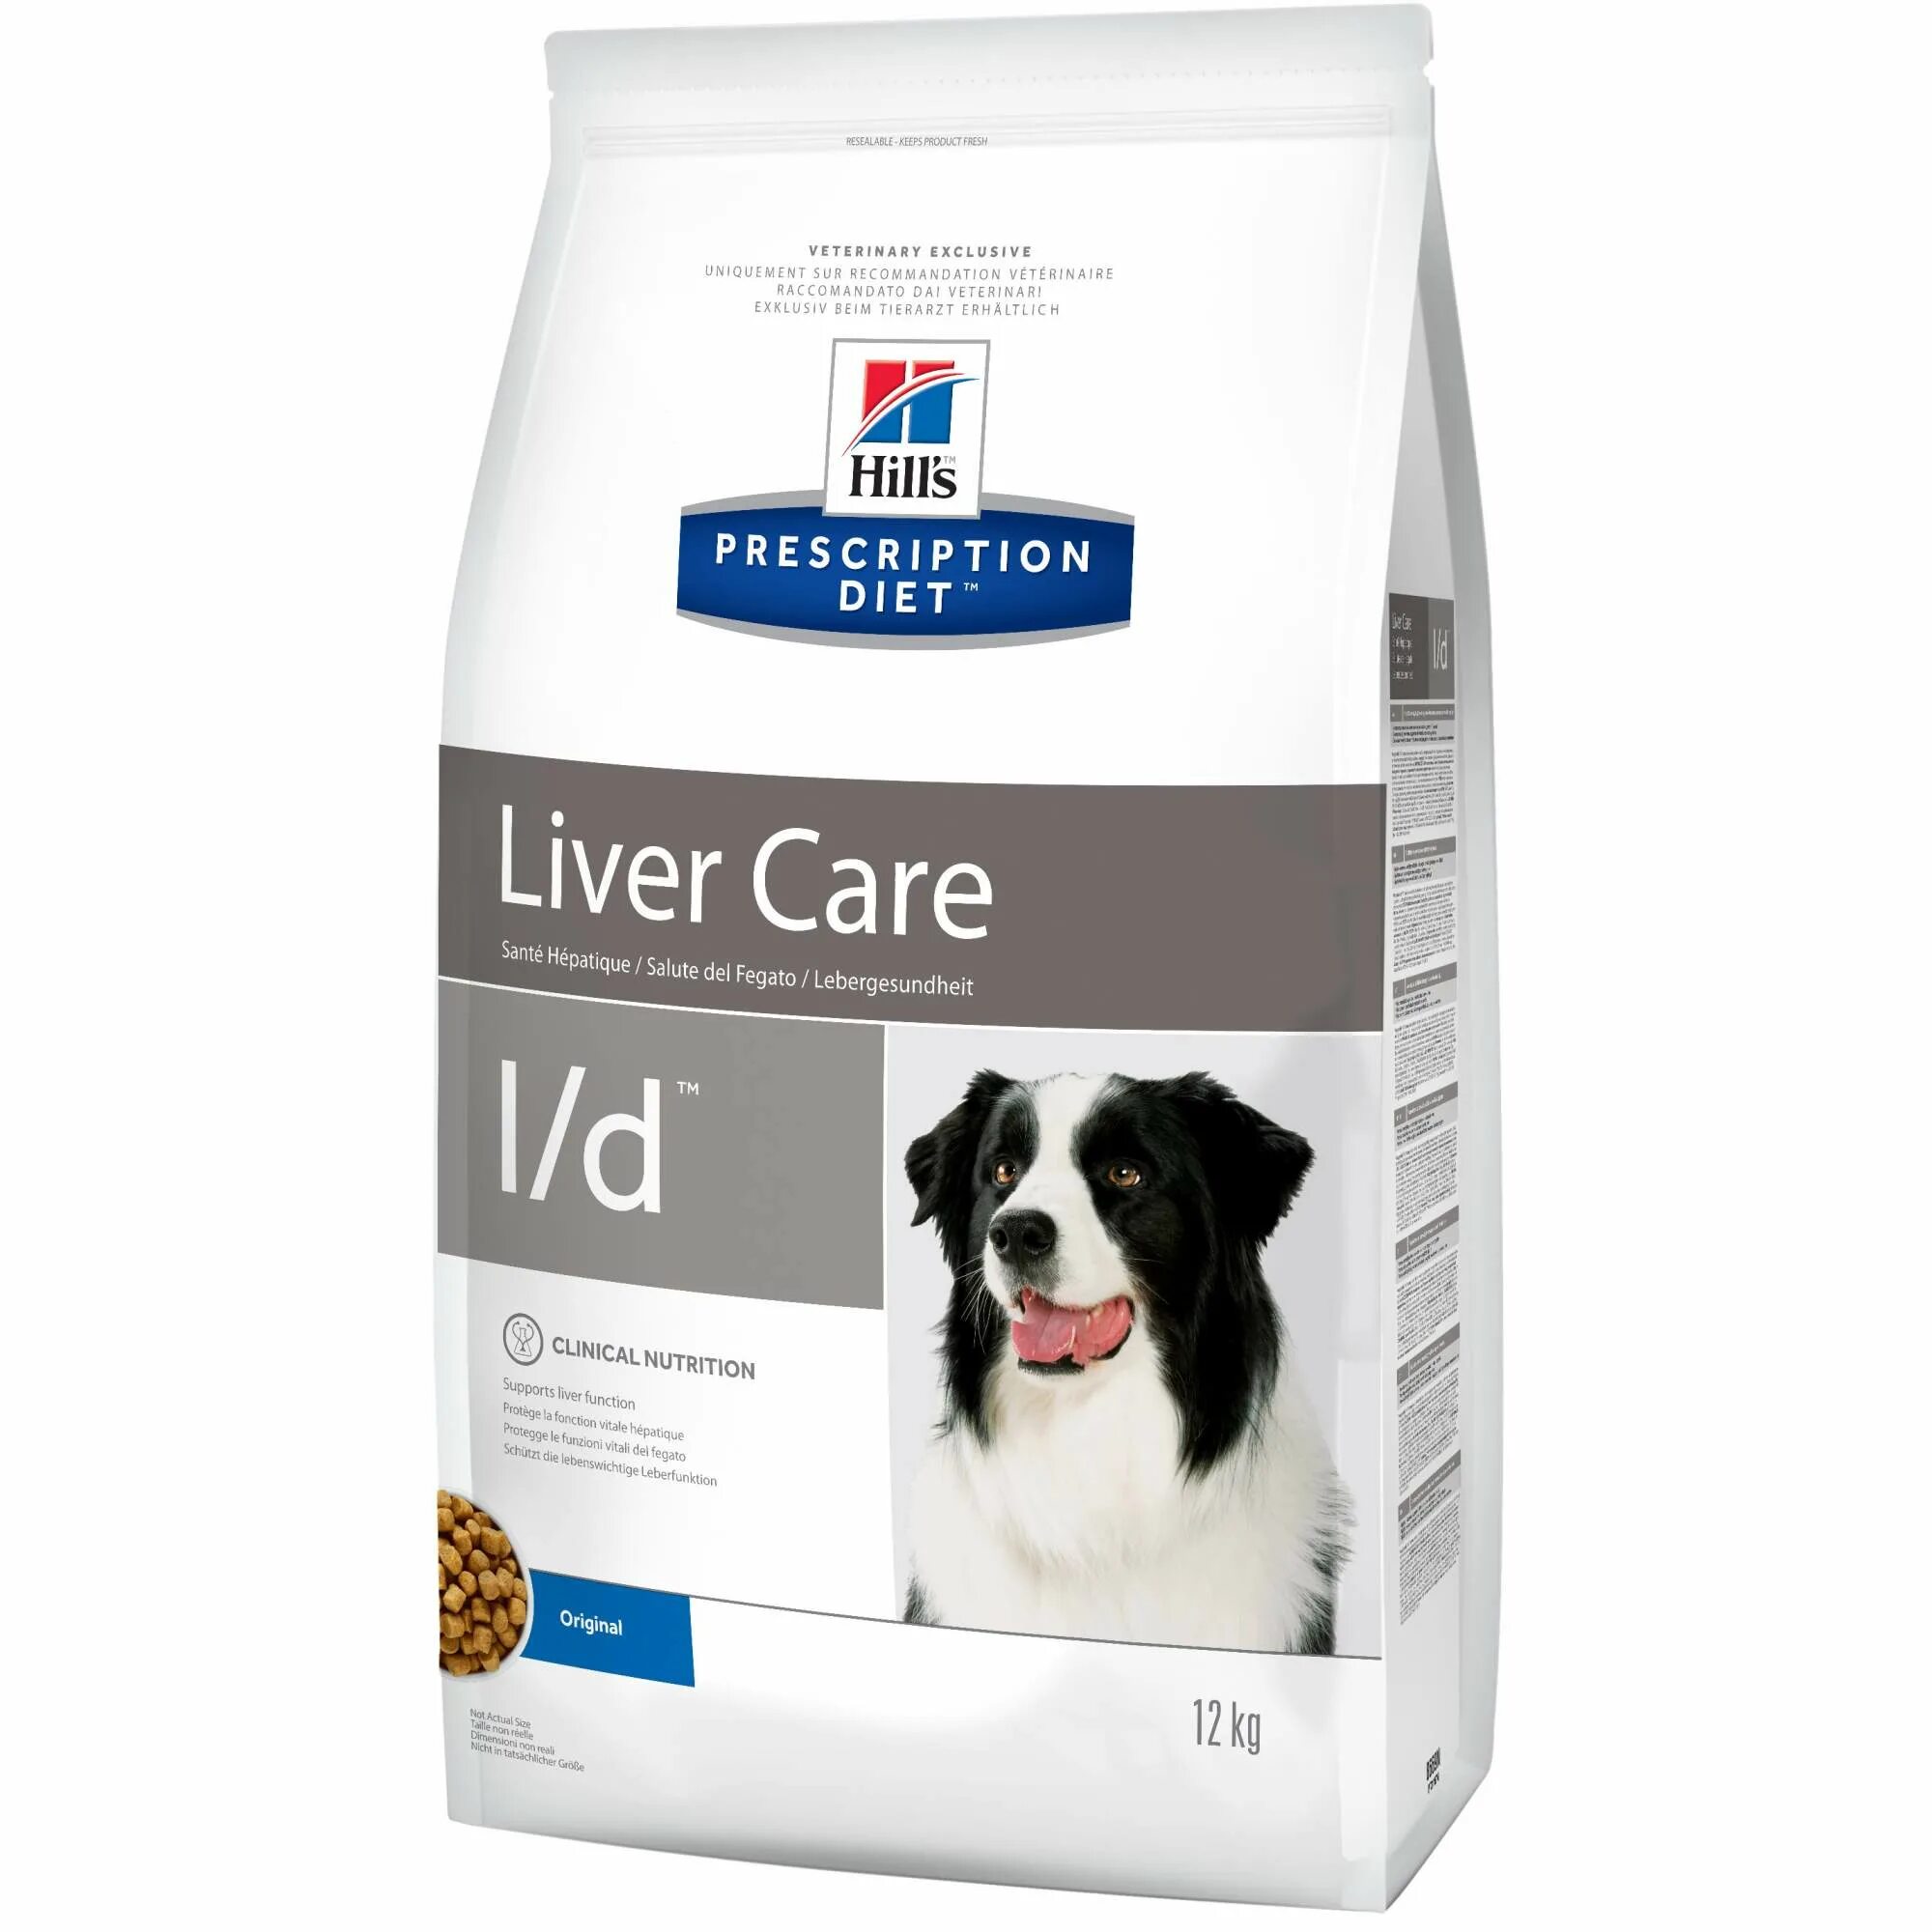 Hill's Prescription Diet l/d canine. Hill's Prescription Diet для собак. Liver Care l/d для собак. Hills u/d canine для собак. Корм для собак hills d d купить